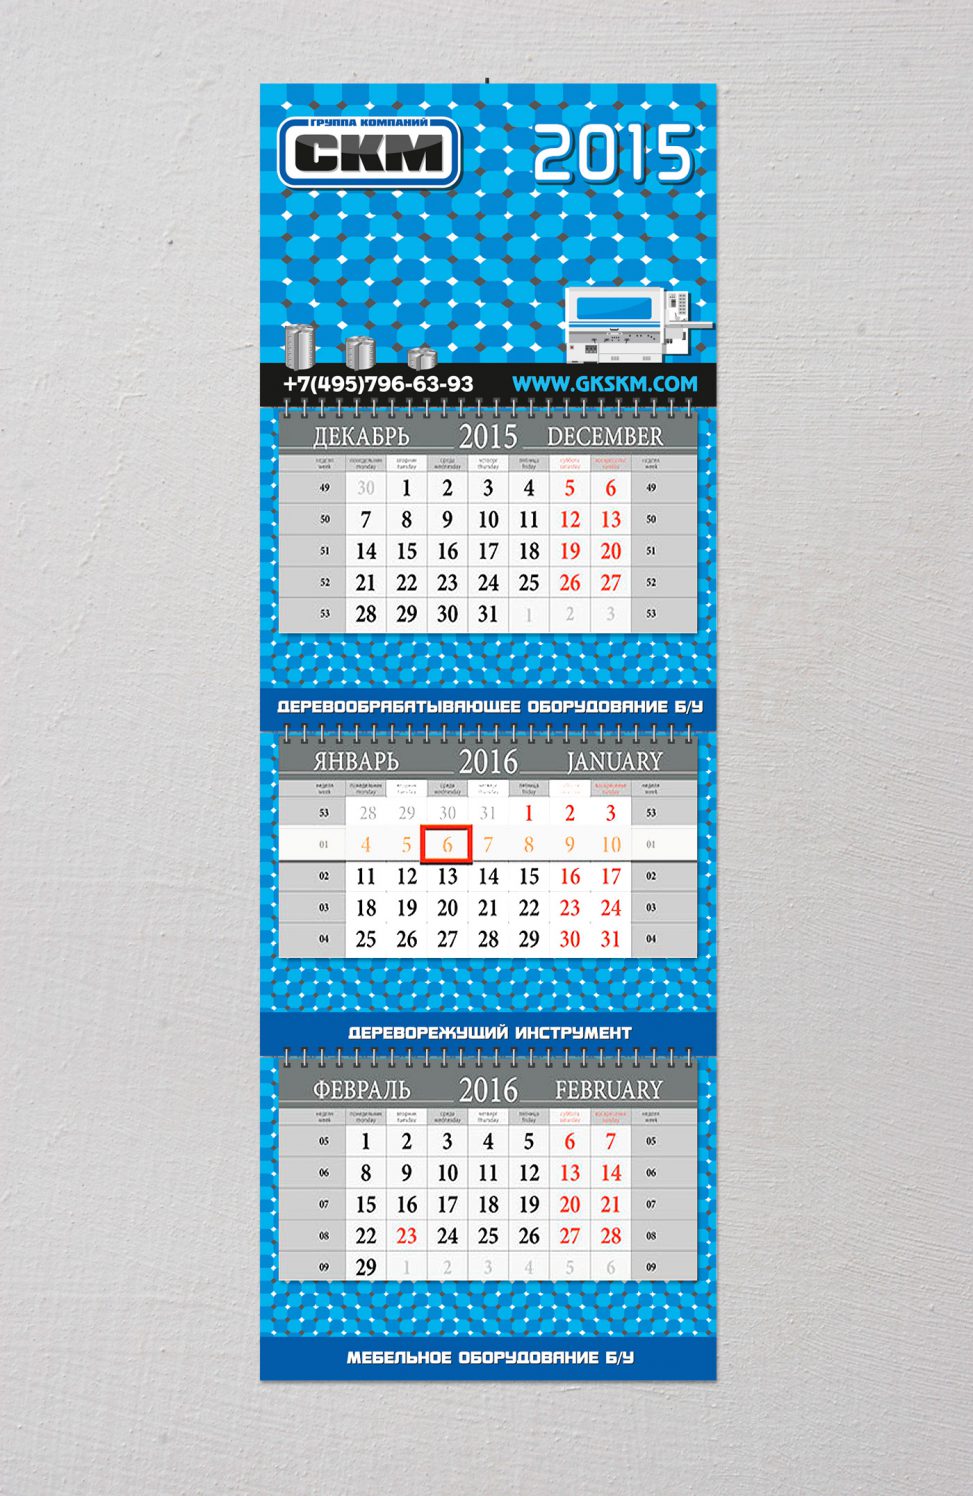 Дизайн квартального календаря для ГК СКМ